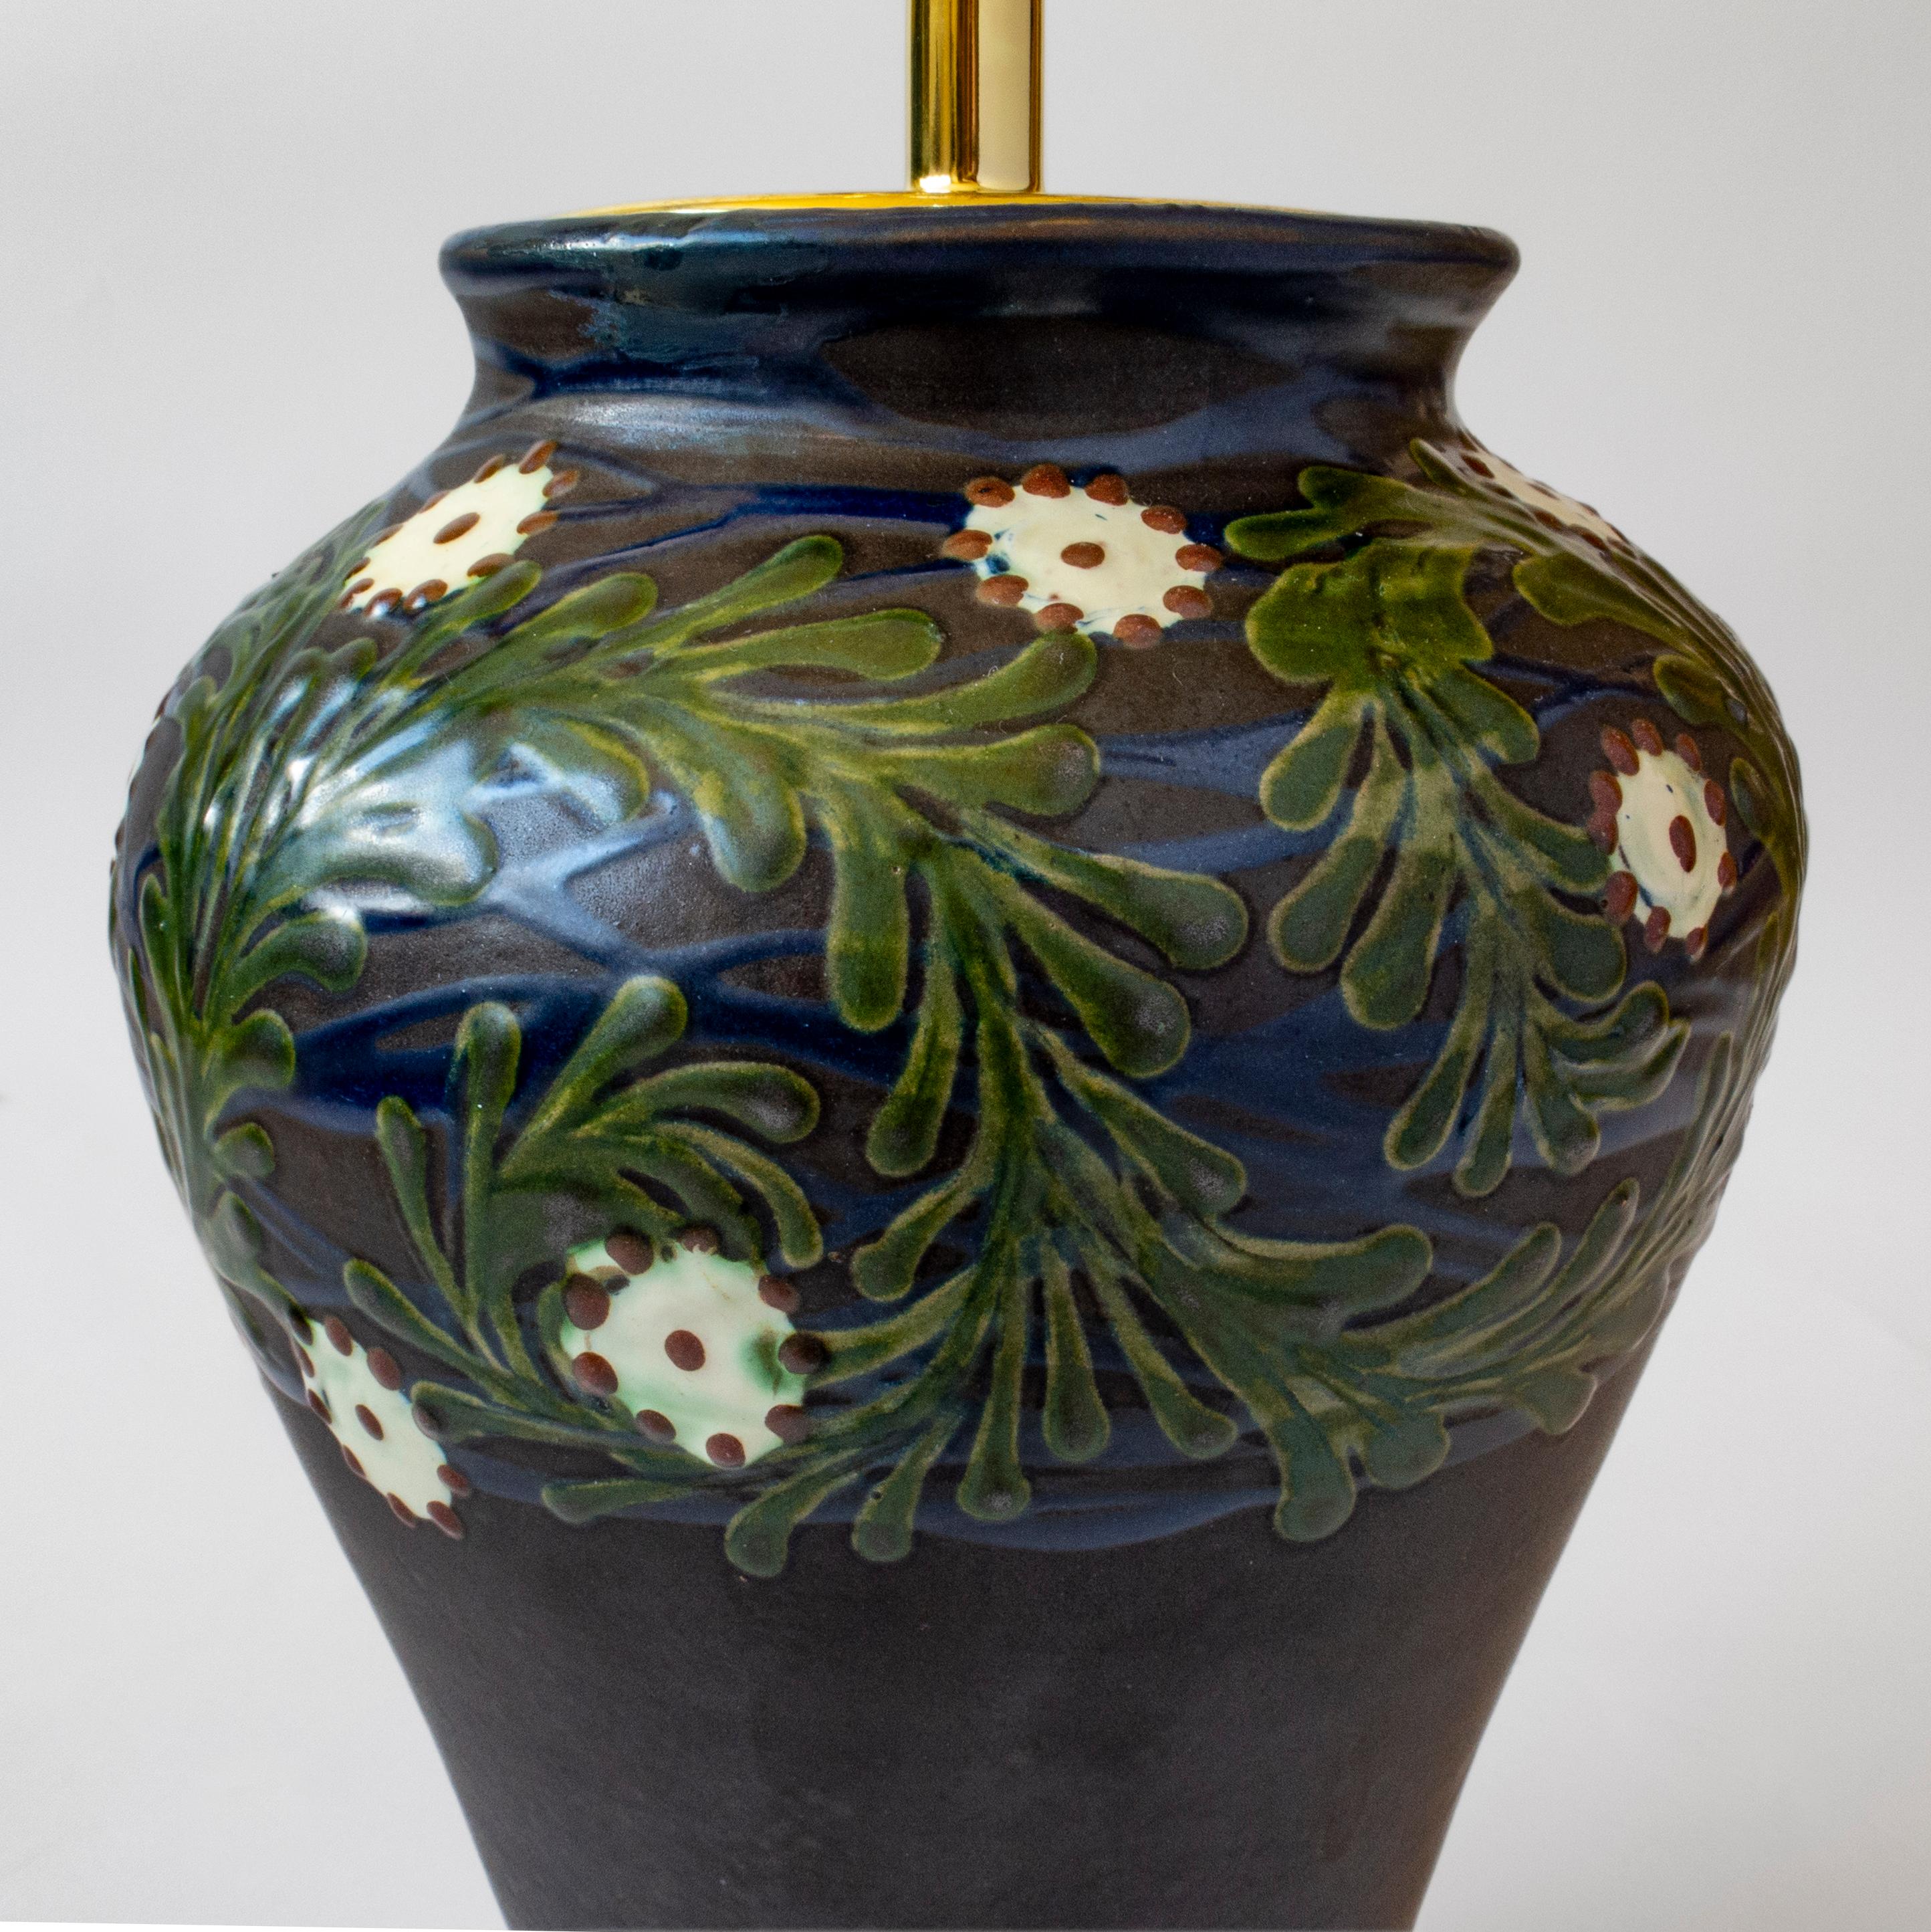 Die spitz zulaufende, hochschulterige Vase ist mit weißen und purpurroten Blüten geschmückt, die in wirbelnde, bunte, grüne Wedel und ultramarinblaue Wellen eingebettet sind, die auf dunkelblauem Grund stehen und in einem kannelierten, weiß